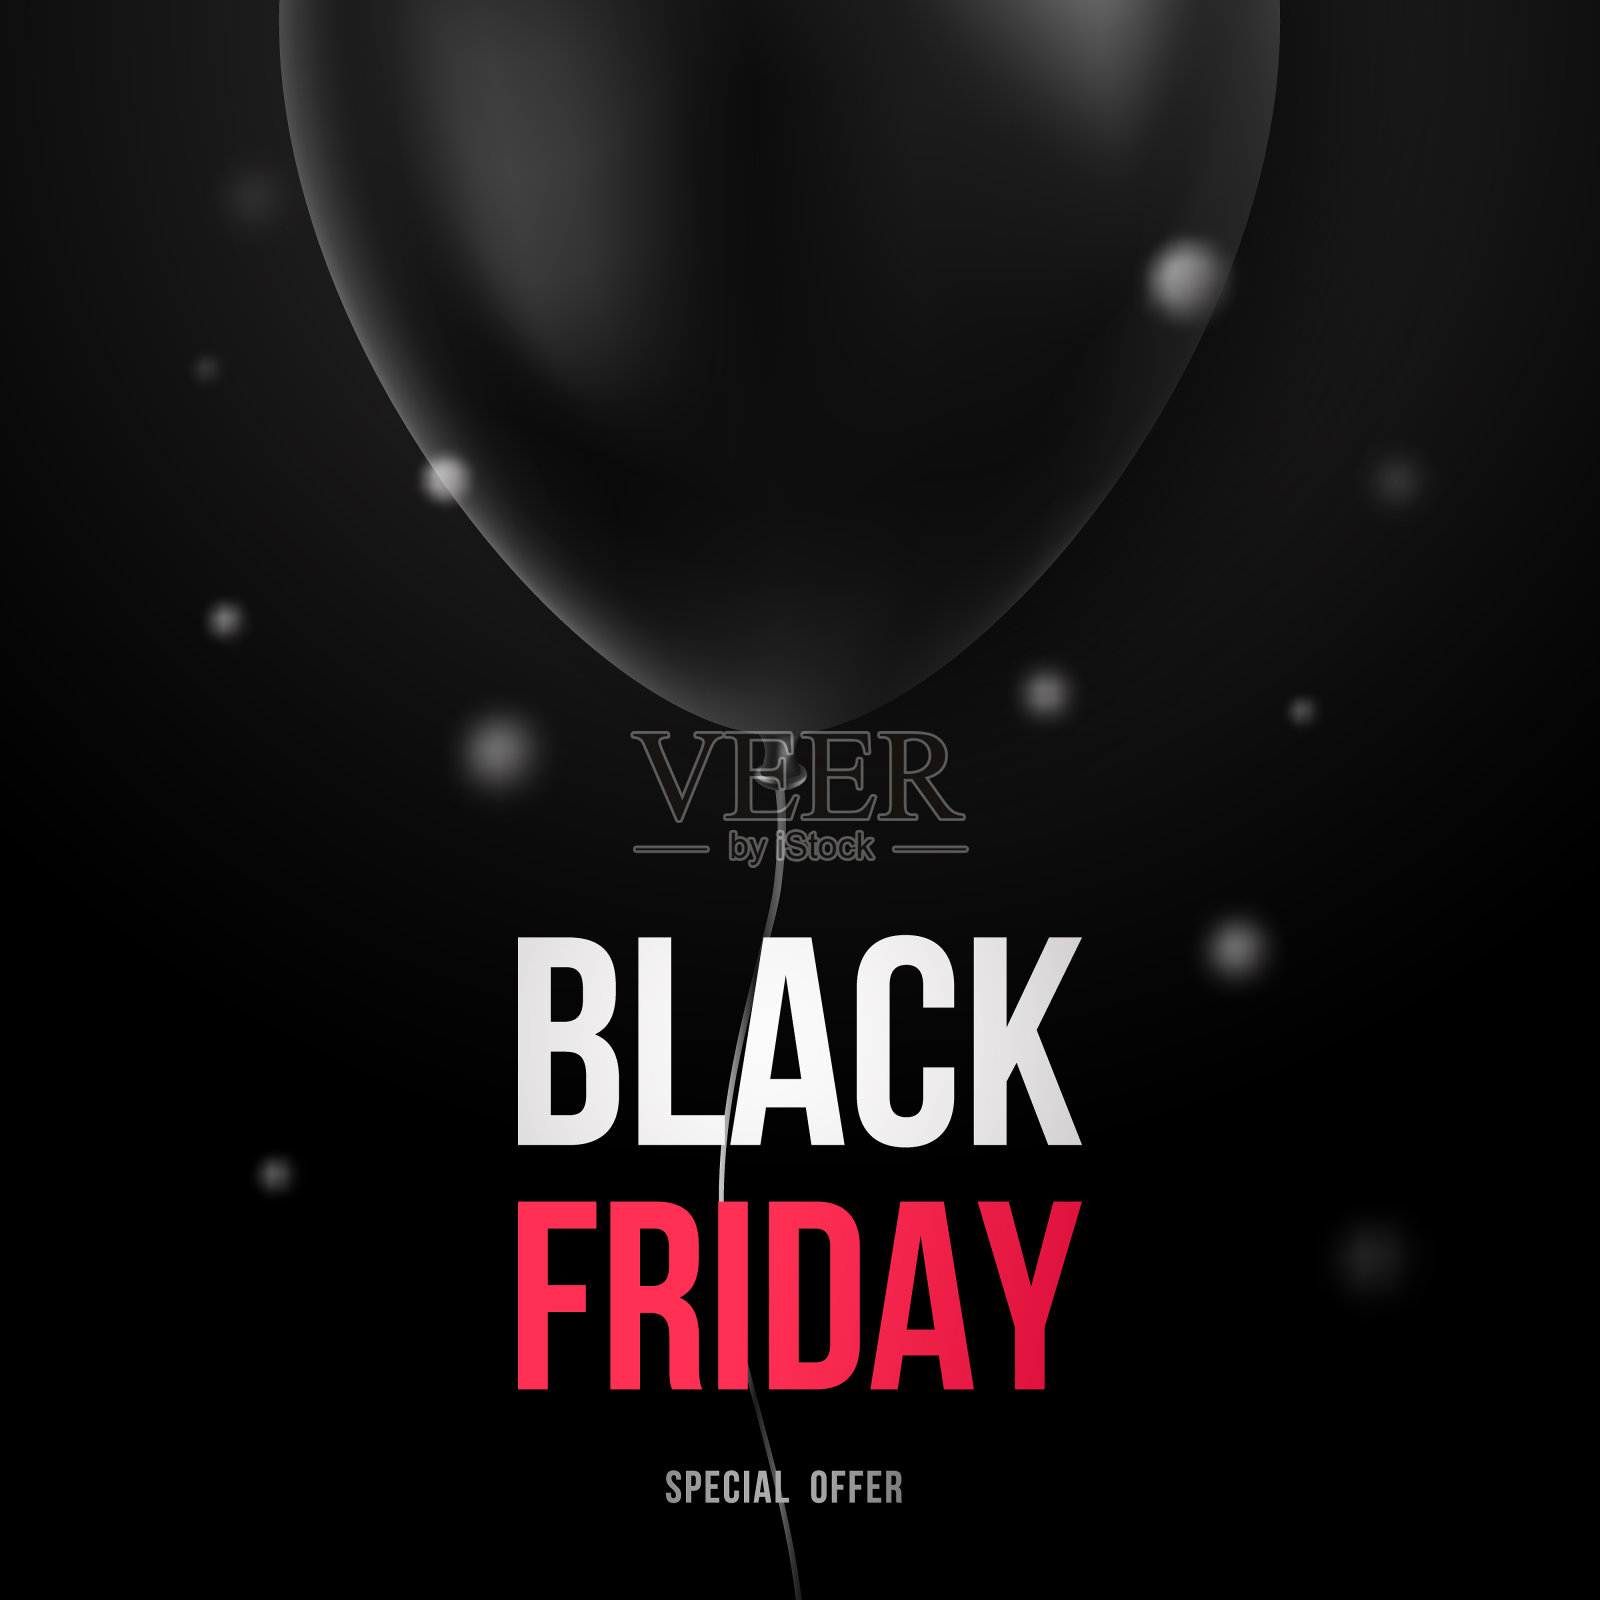 黑色气球的黑色星期五促销设计模板。3d光滑的黑色气球。“黑色星期五”的背景。矢量插图。背景图片素材